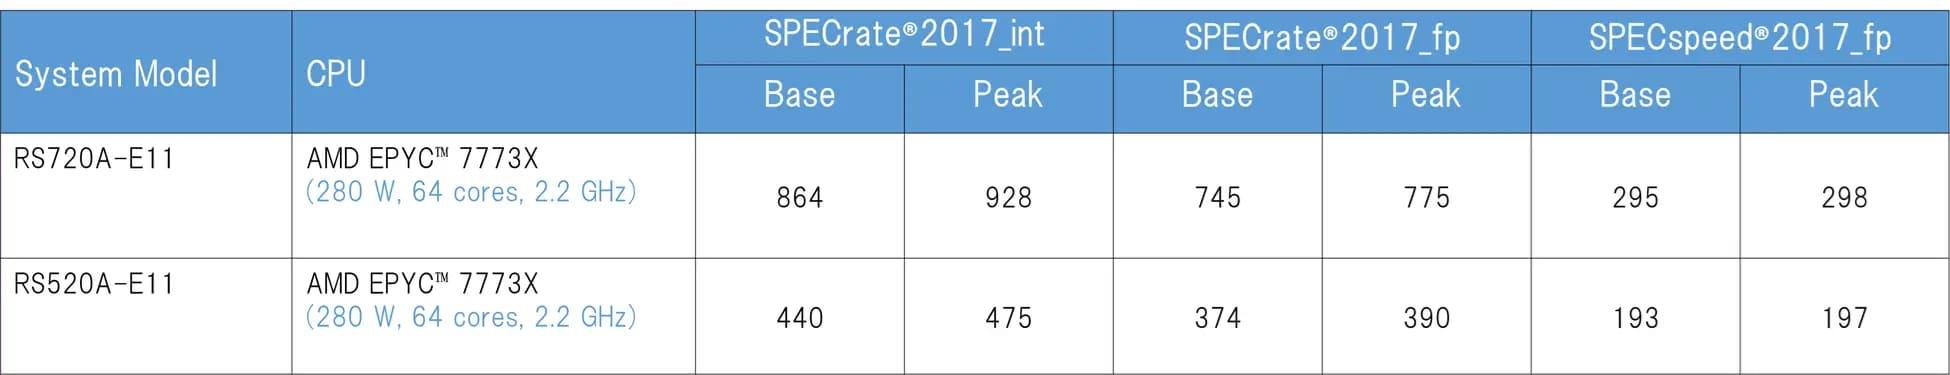 PEC CPU results